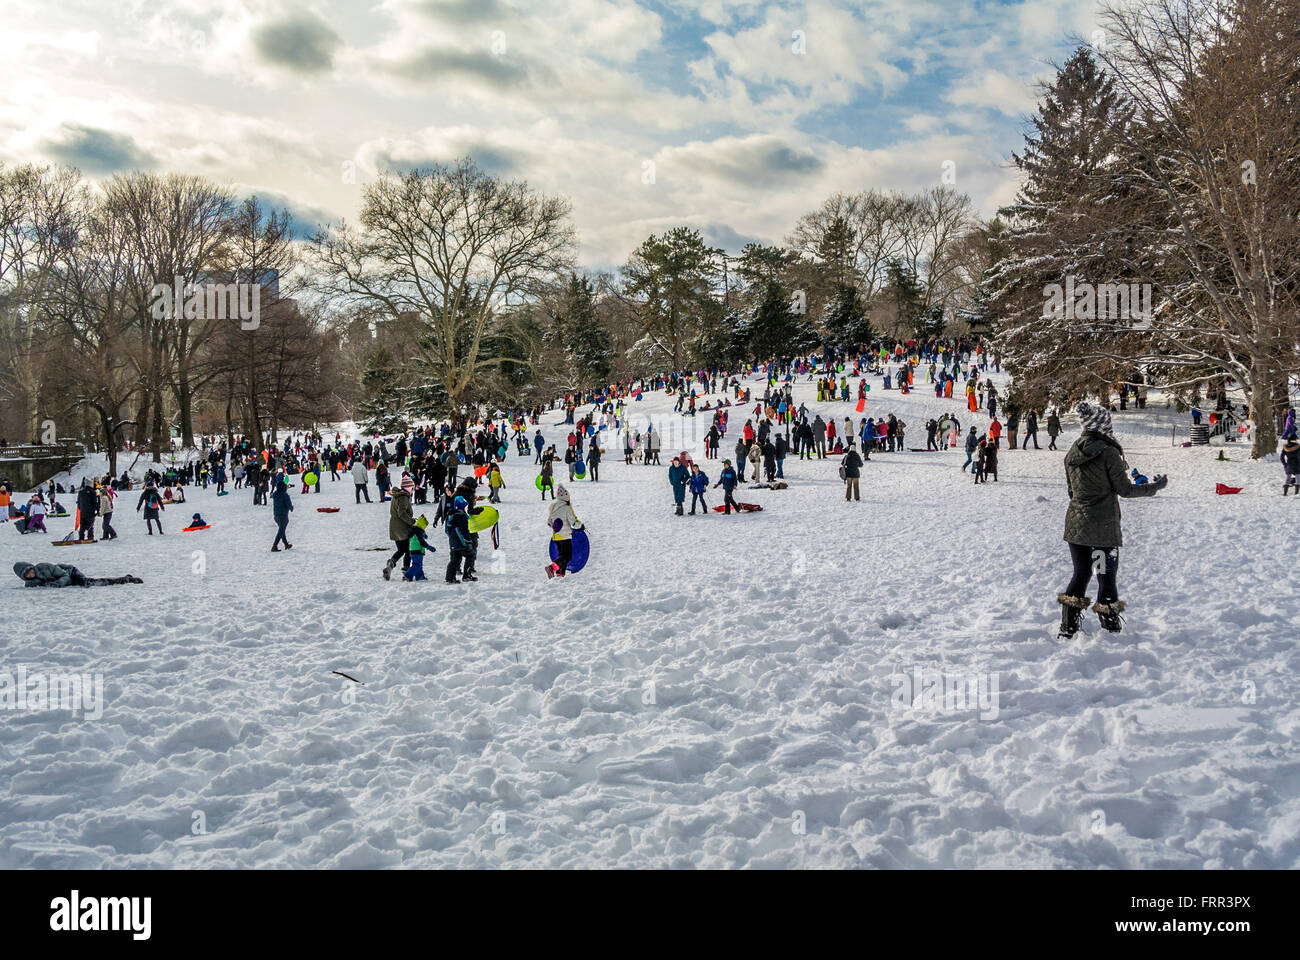 La luge dans Central Park en hiver, New York City, USA. Banque D'Images